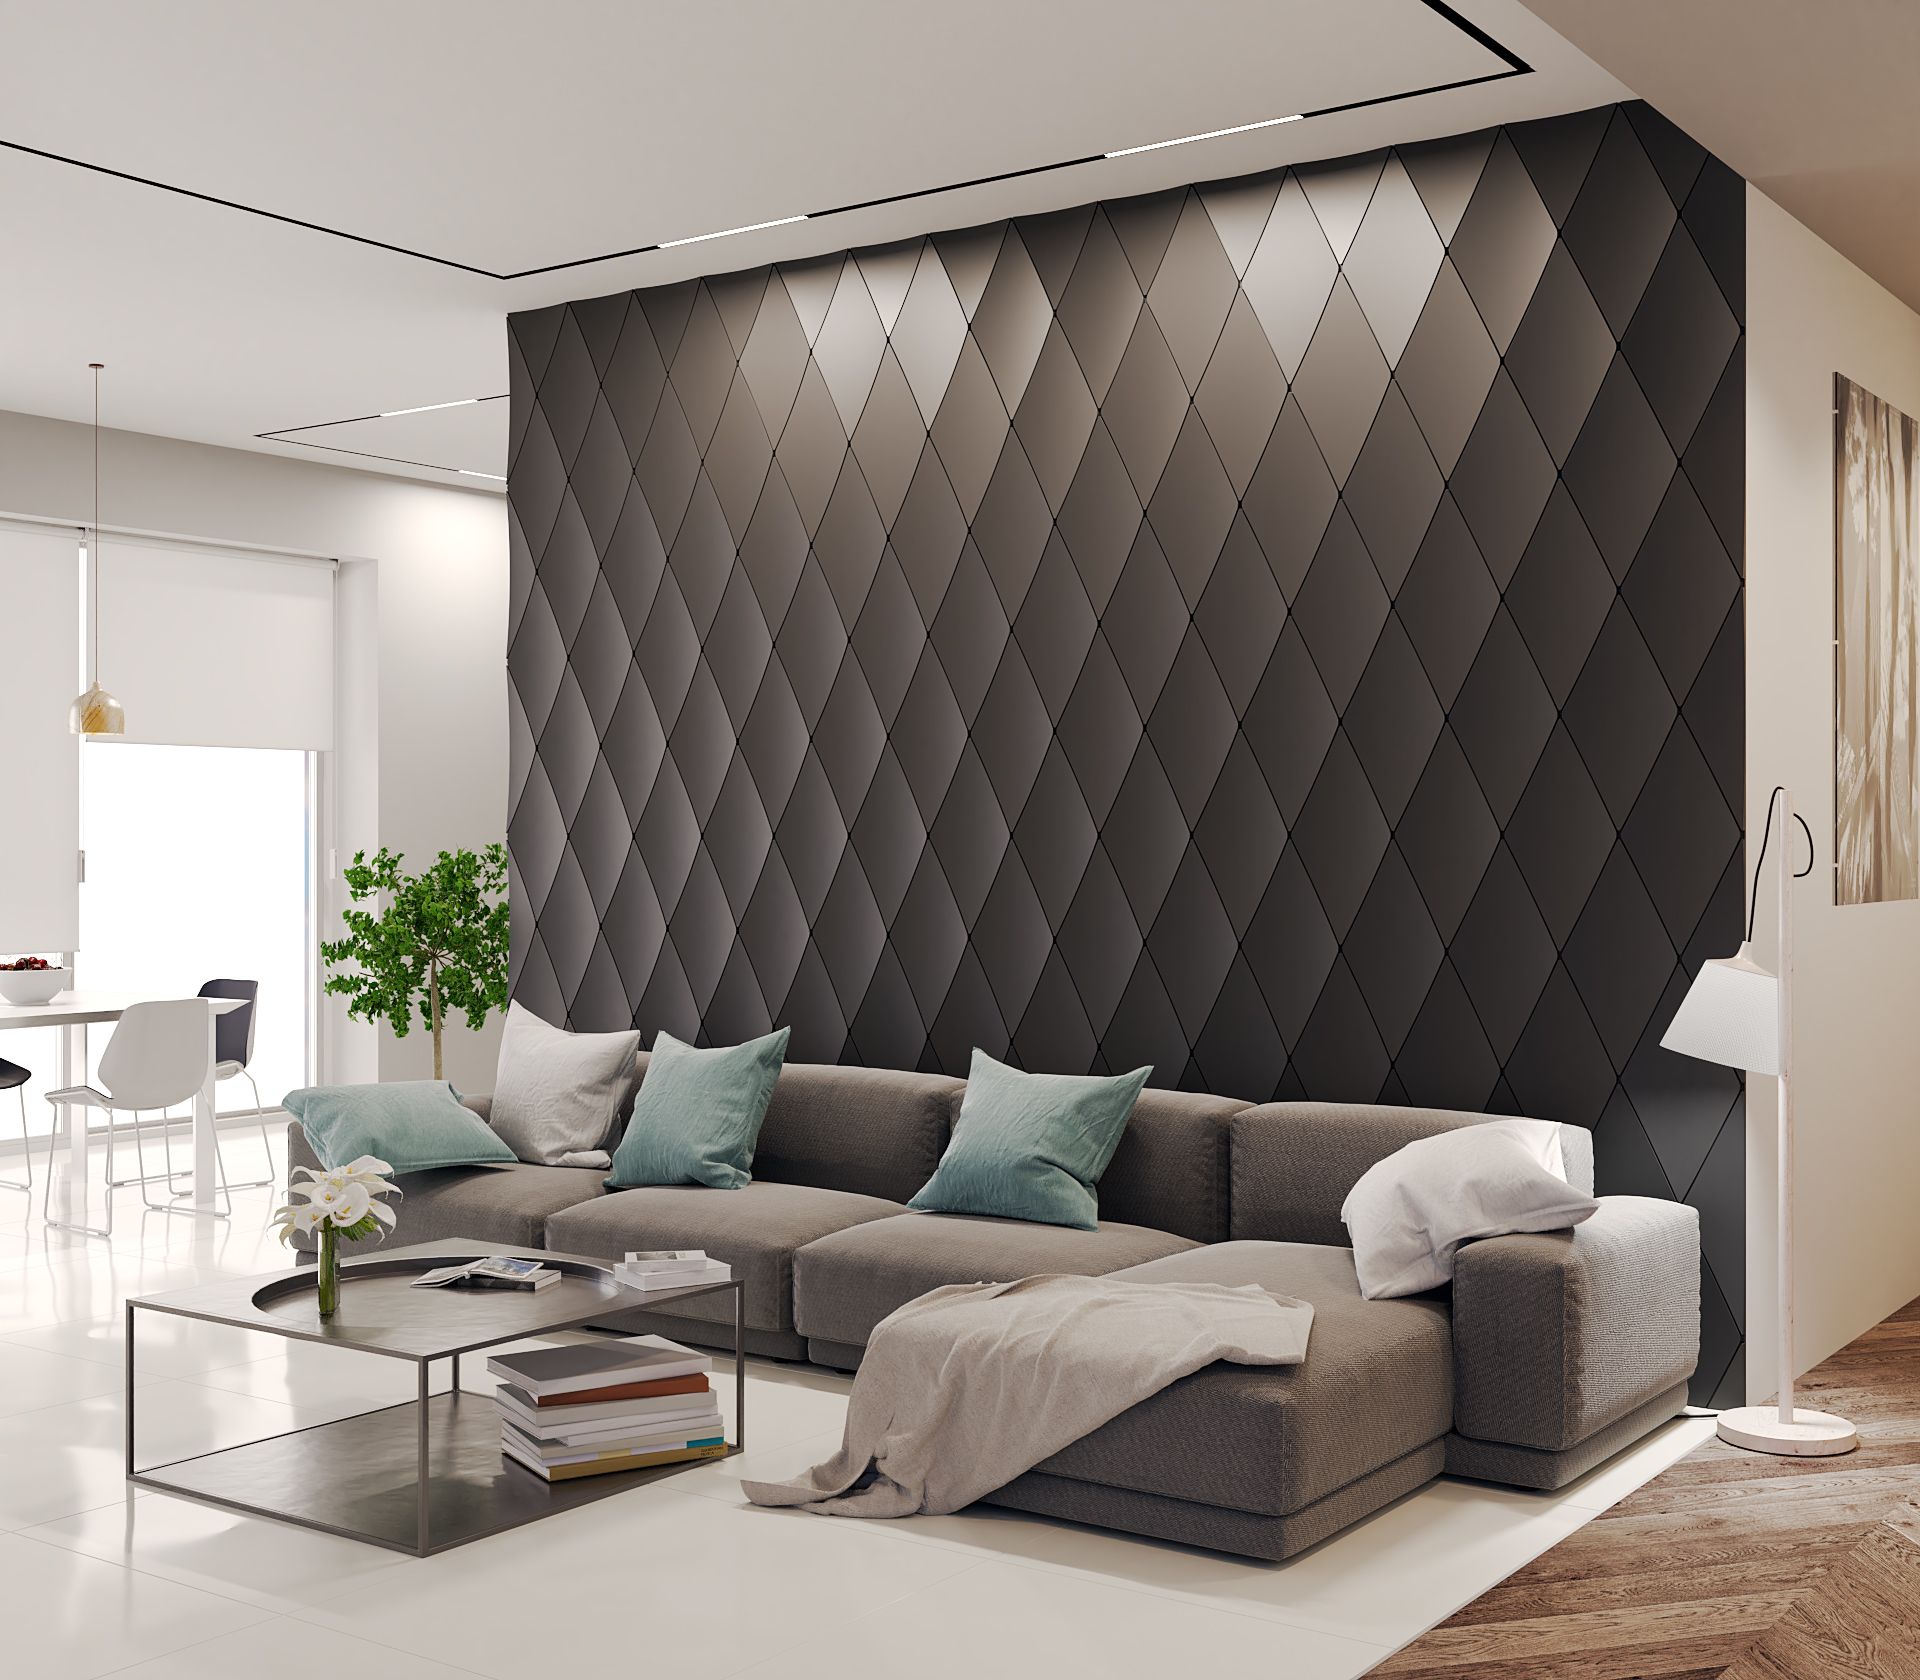 3D Wall Panels Design Ideas